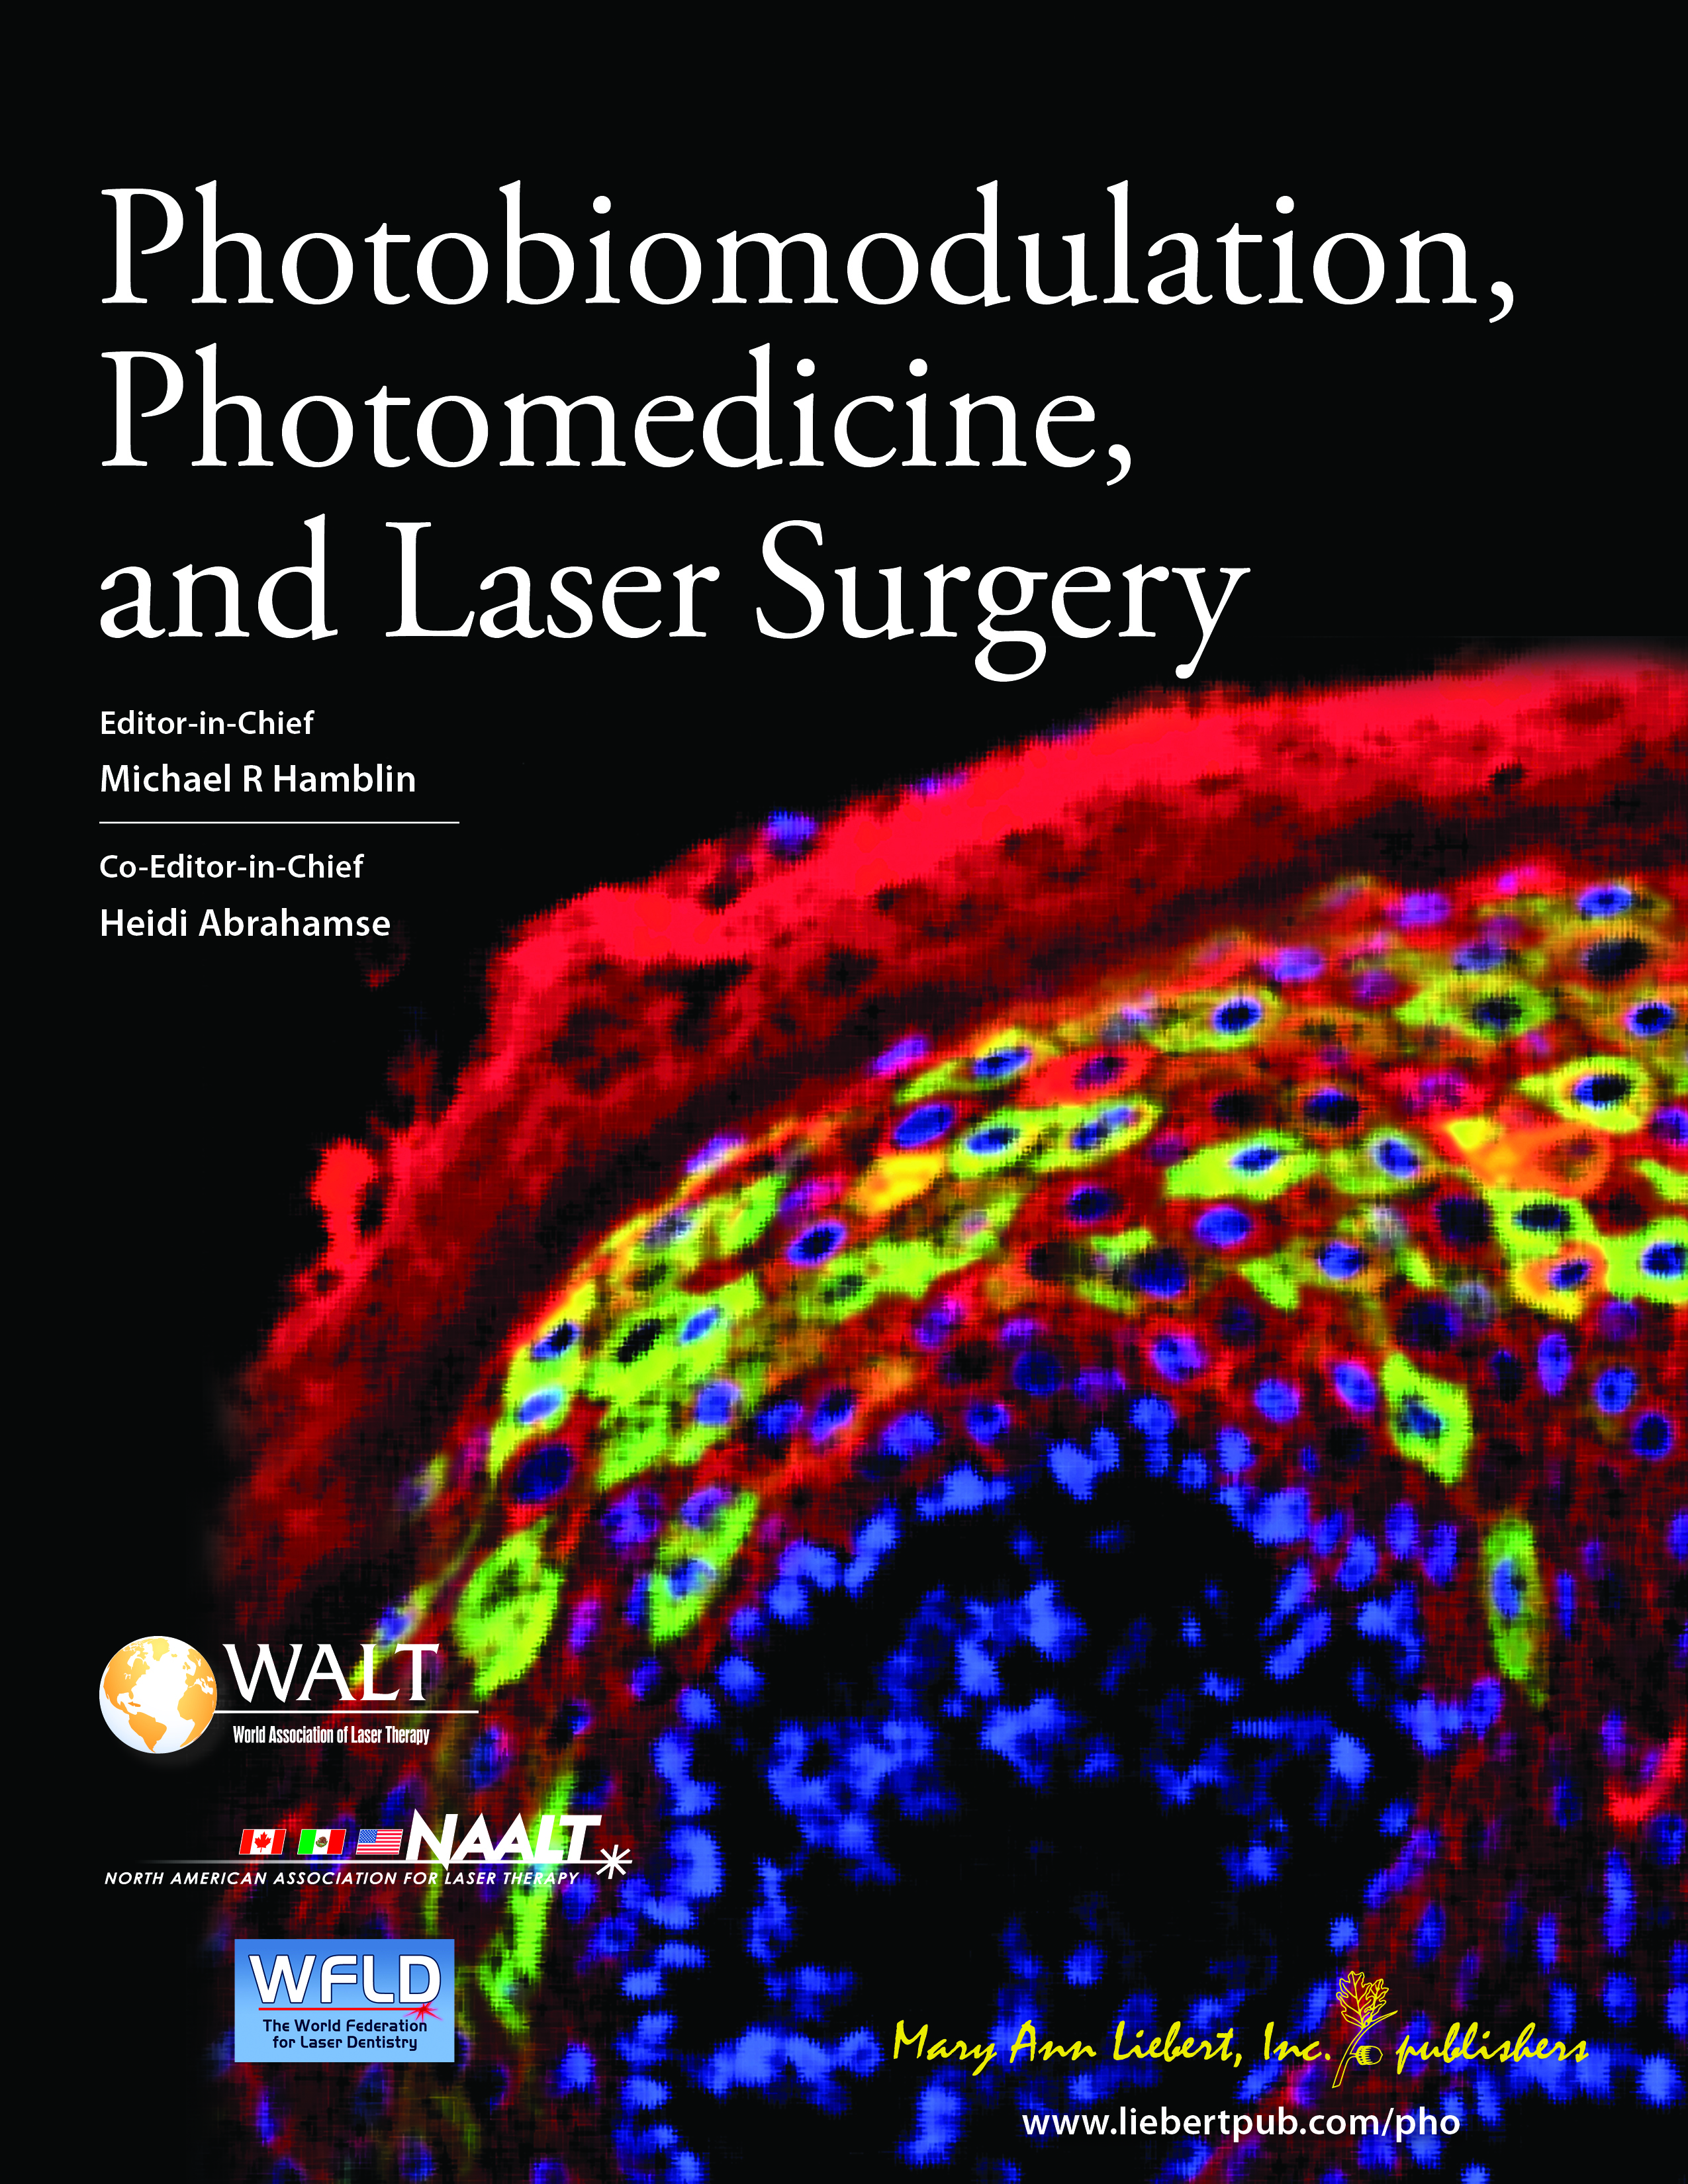 Photobiomodulation Laser